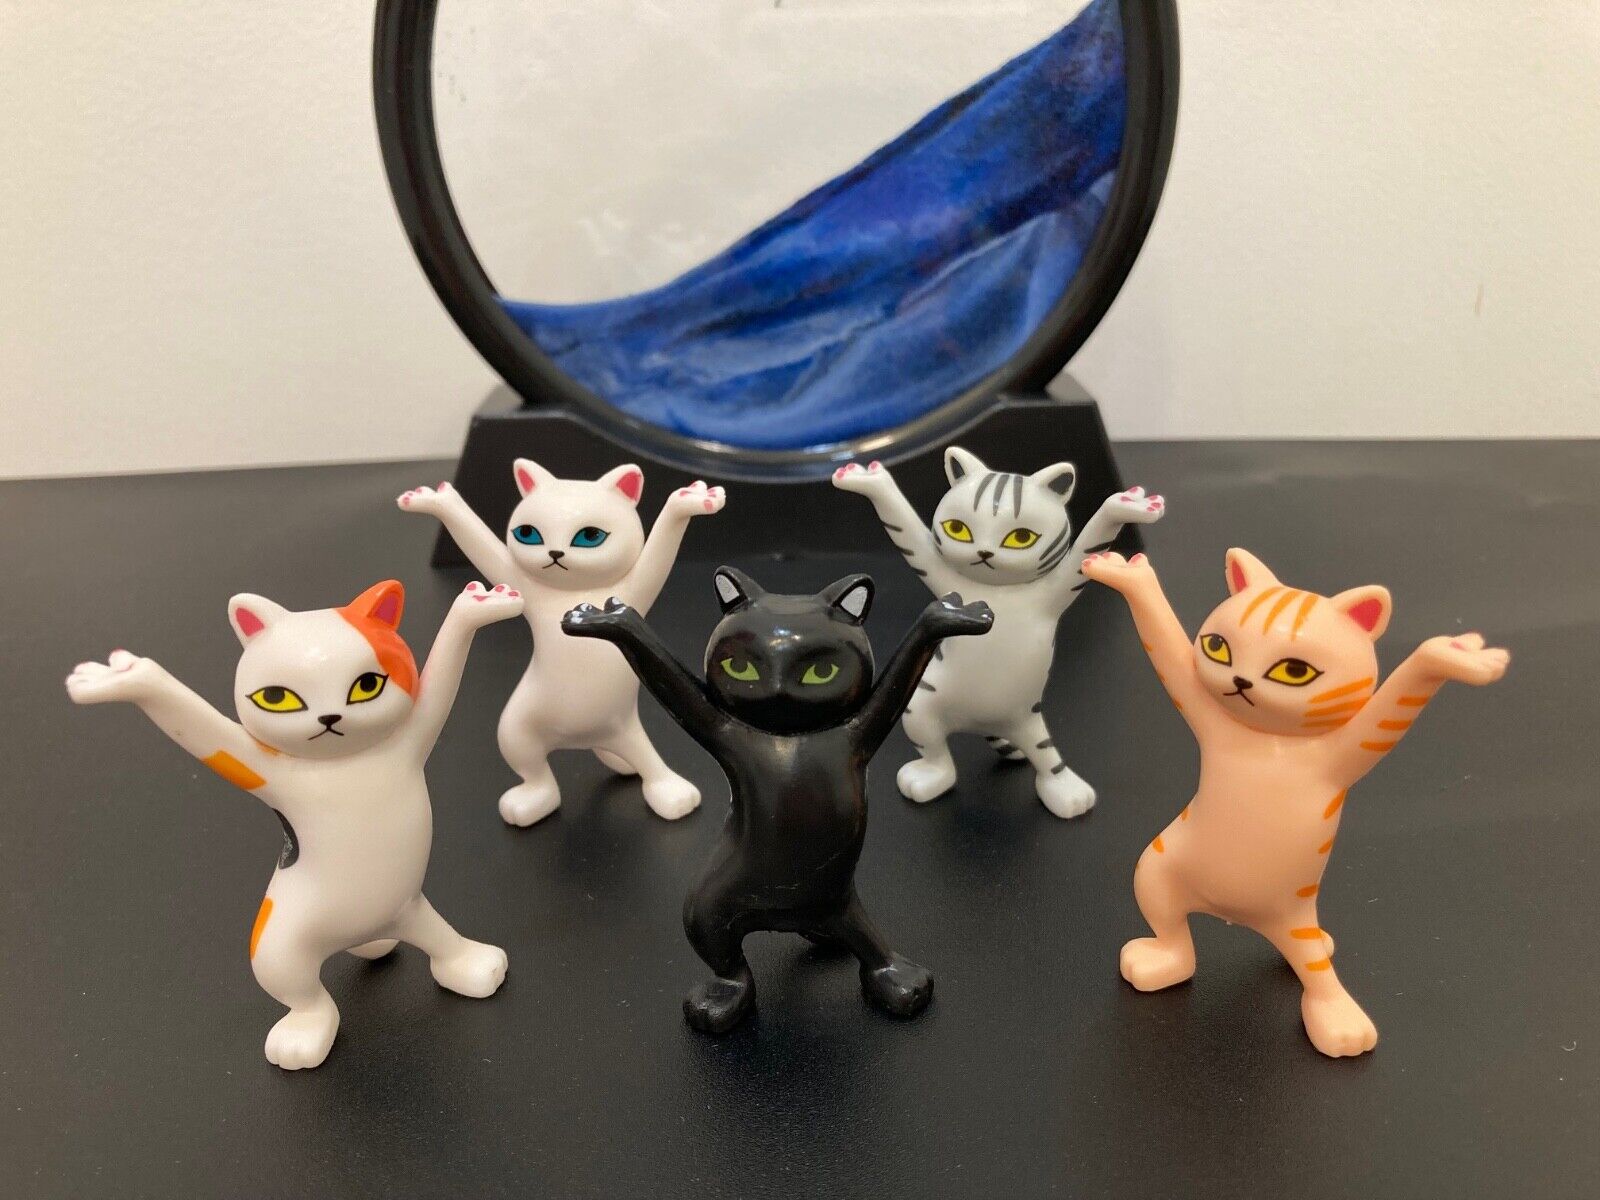 5 PCs Miniature Dancing Kittens Cats Figurines Set, Dancing Cats Ornaments